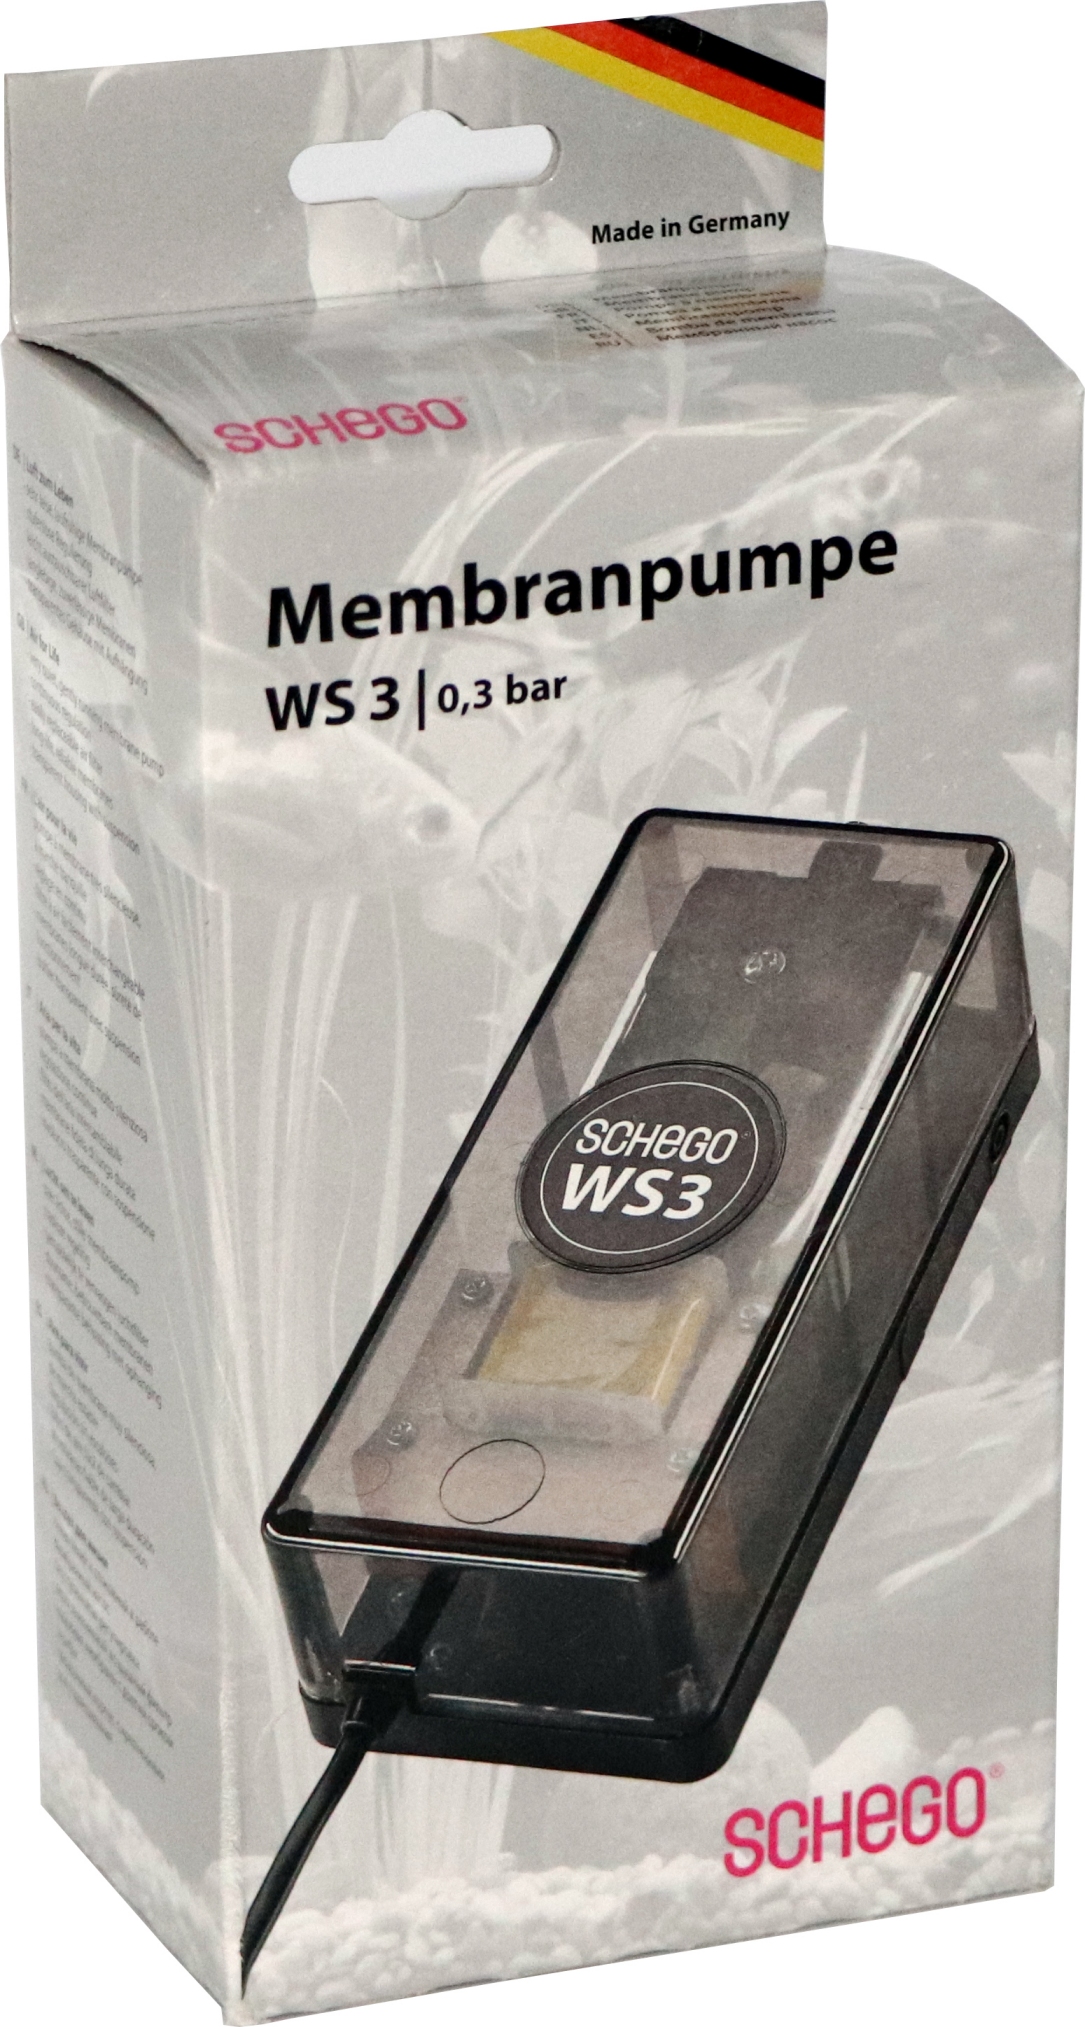 SCHEGO Membranpumpe -M2K3 WS3